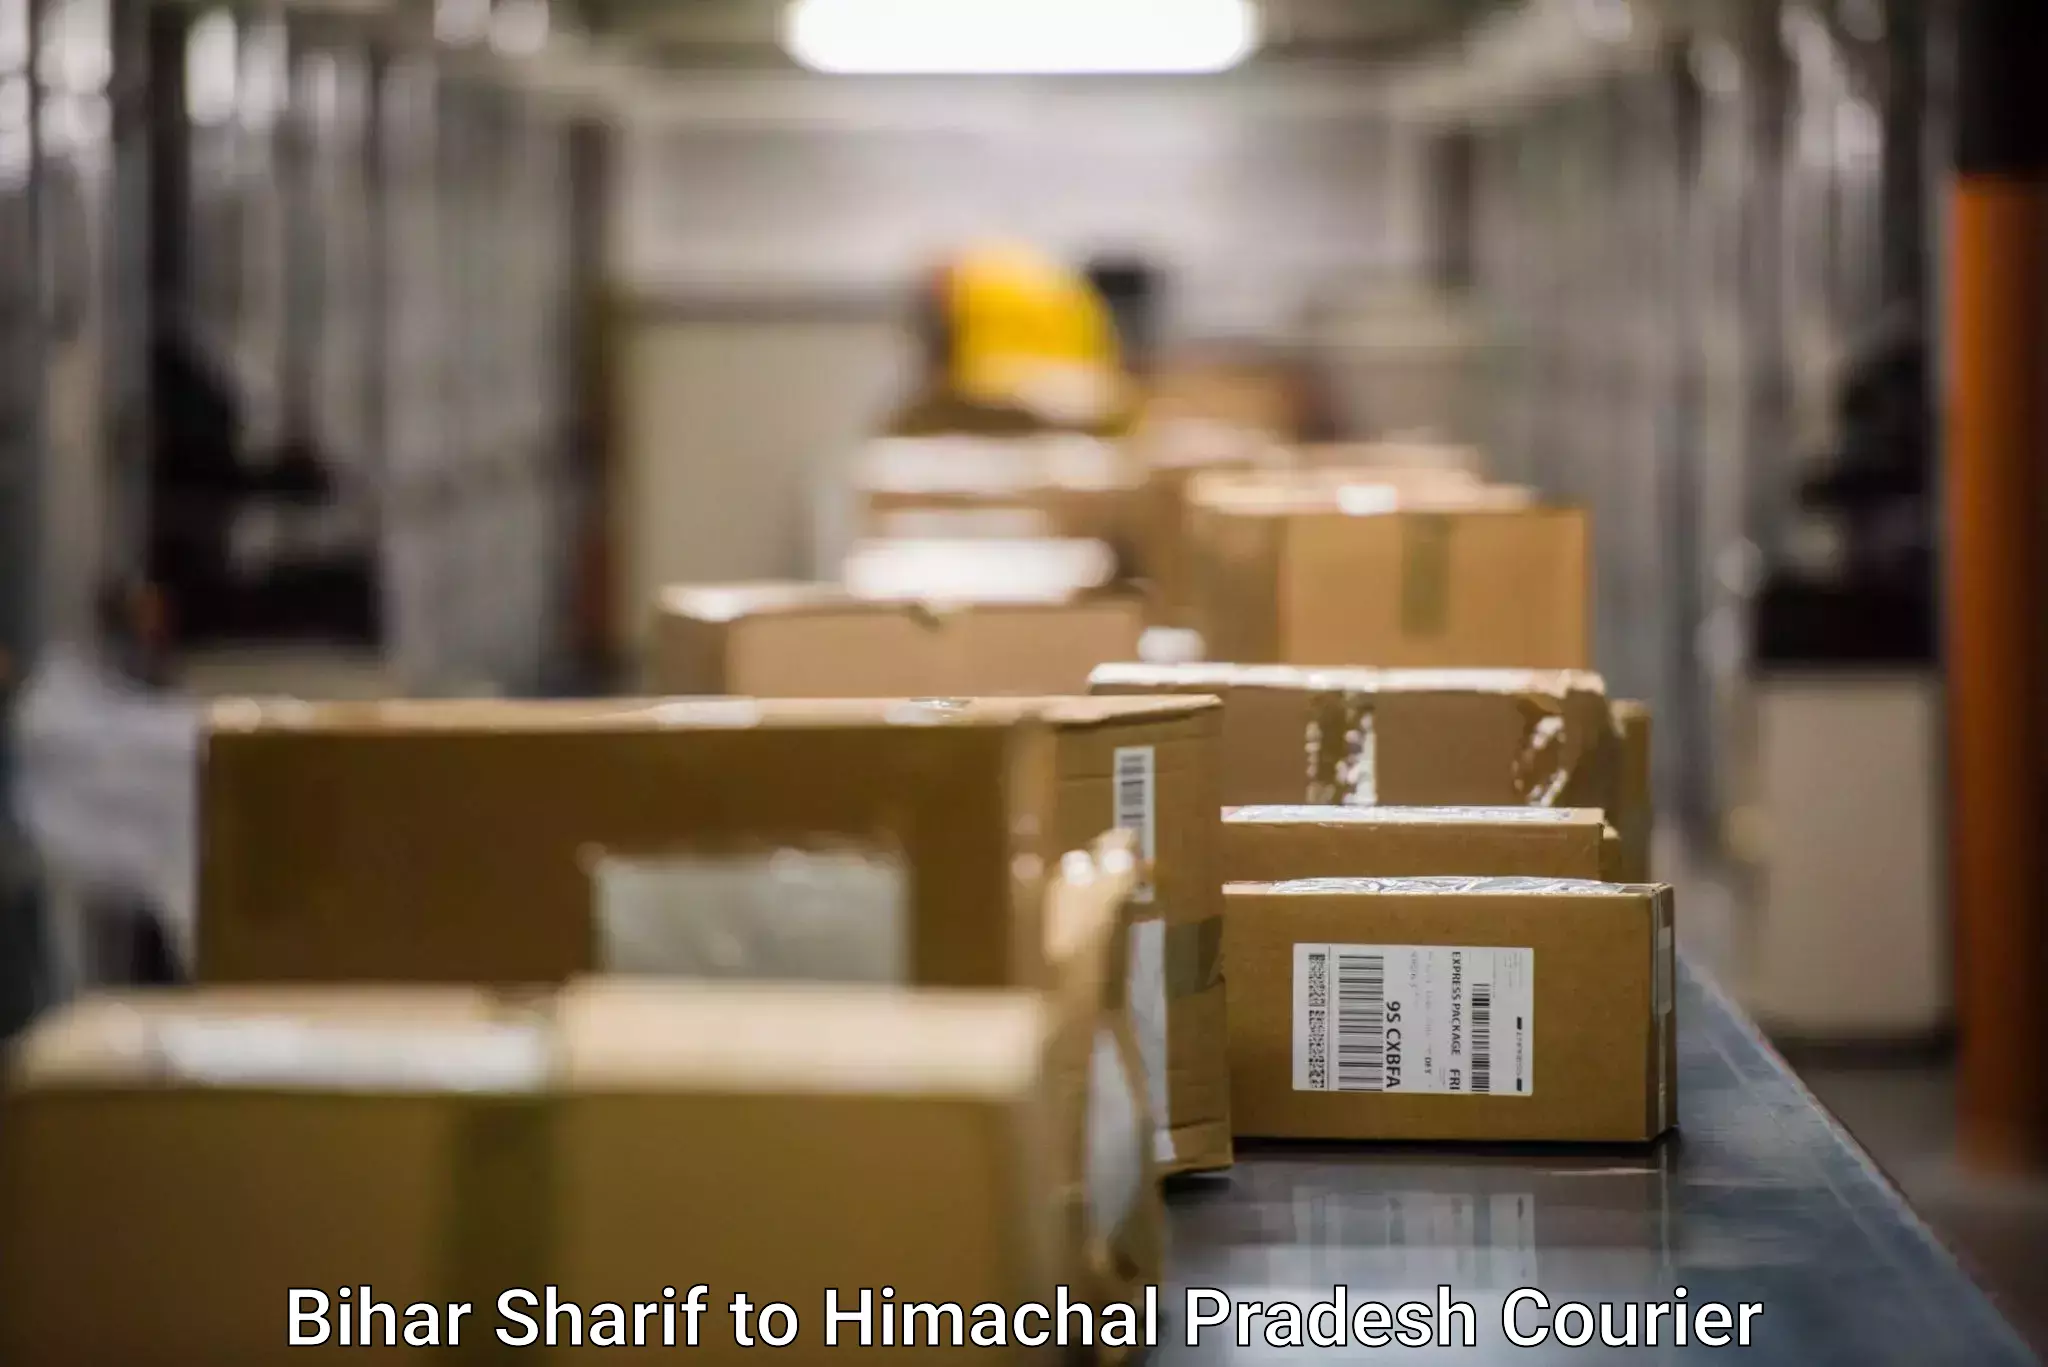 Tech-enabled shipping Bihar Sharif to Sundla